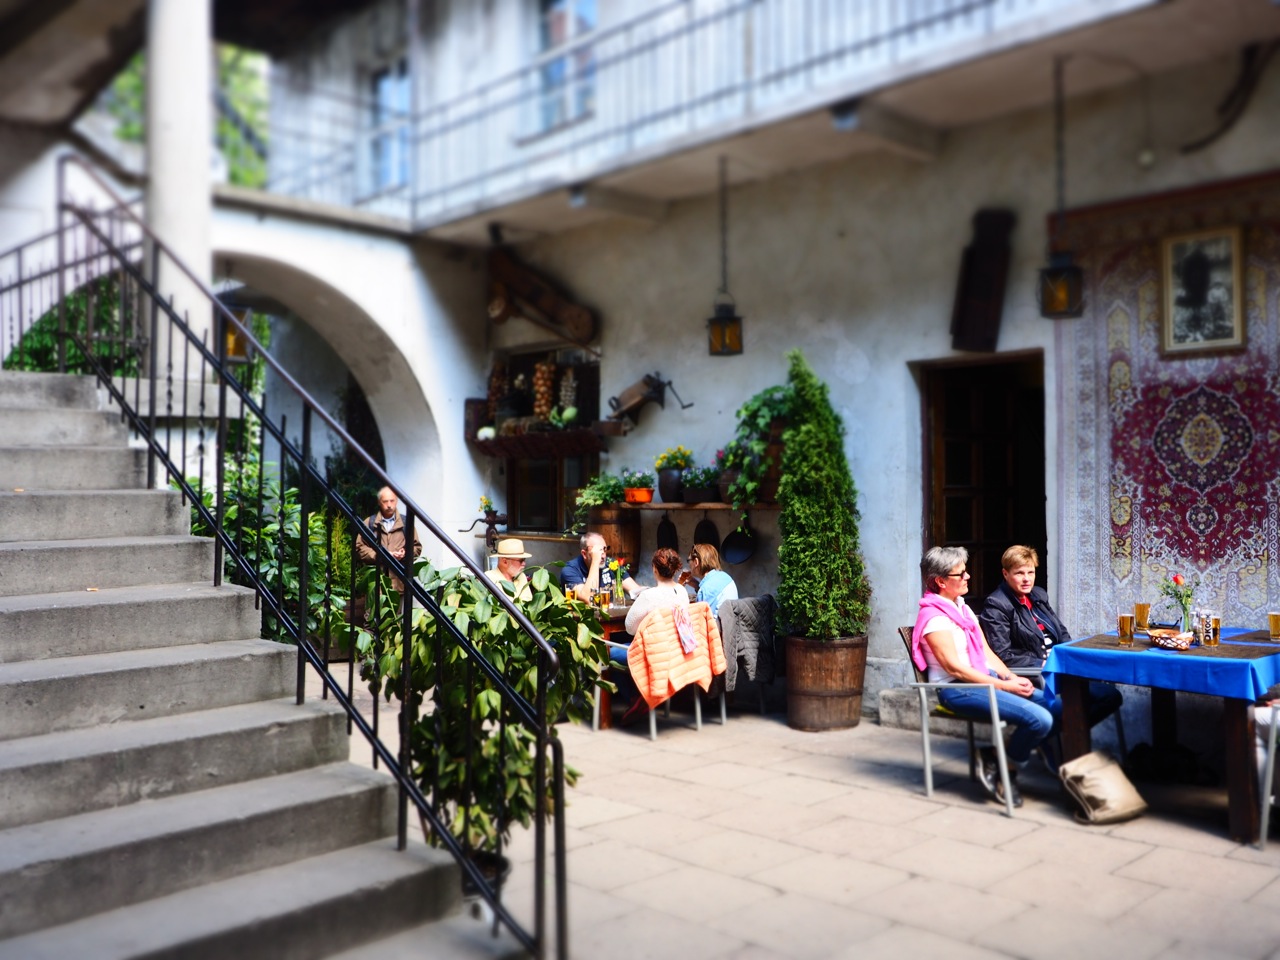 Popular Stajnia cafe in the old Jewish Quarter in Krakow, Kazimierz district. Image: Alison Binney